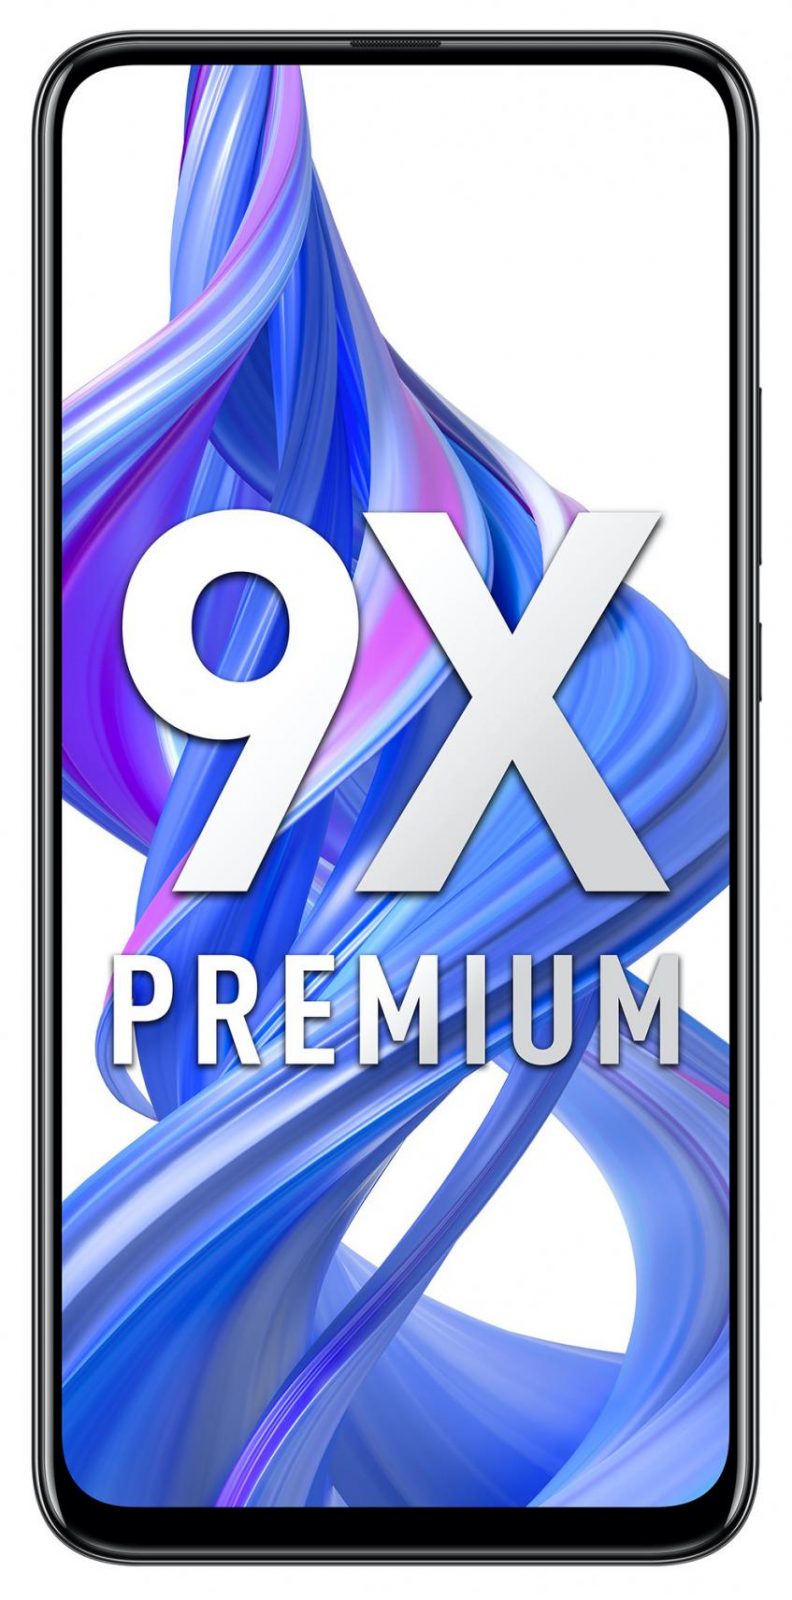 Honor 9X Premium